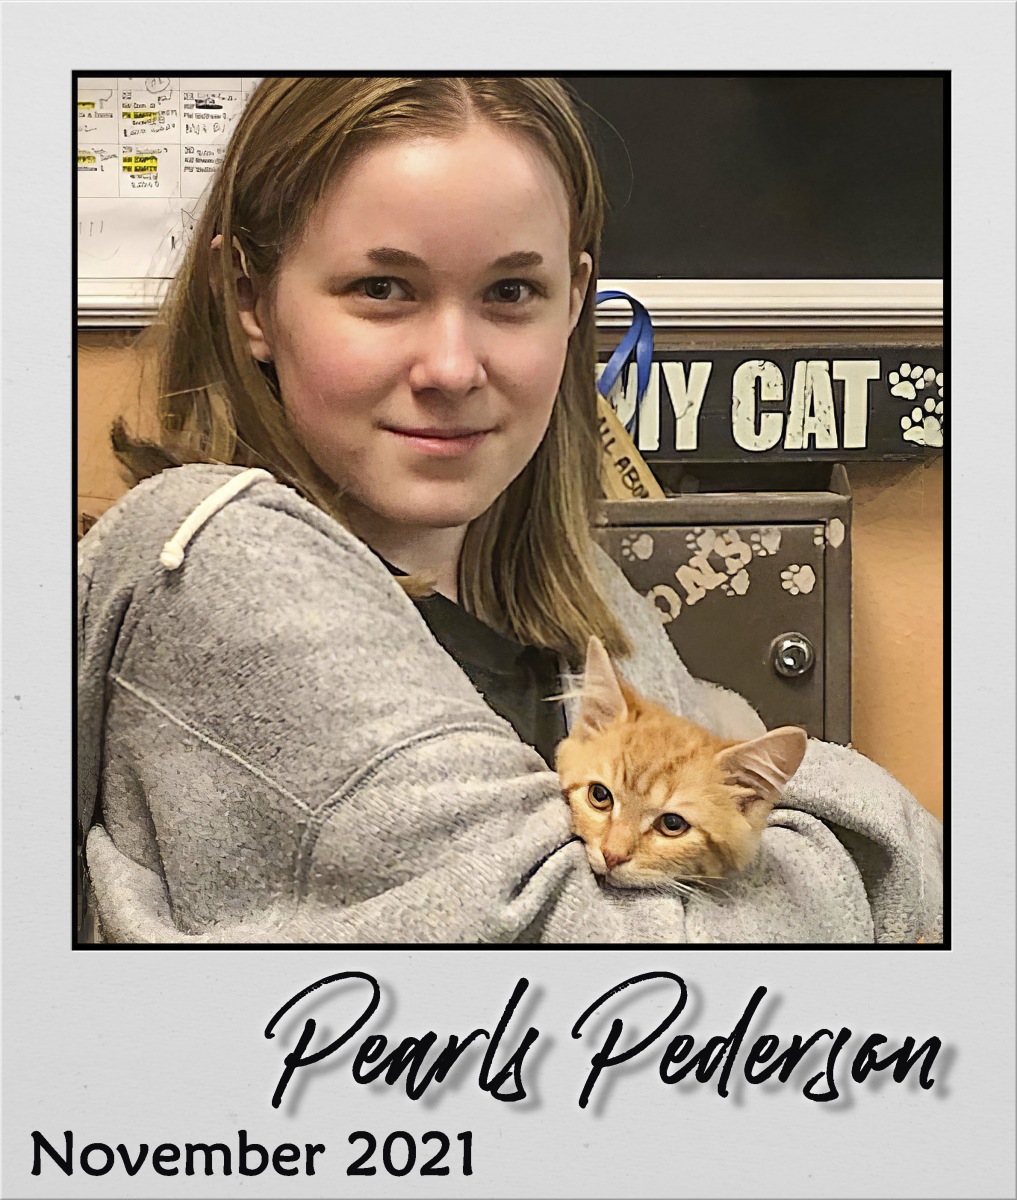 Adopt-Nov2021-Pearls-Pederson